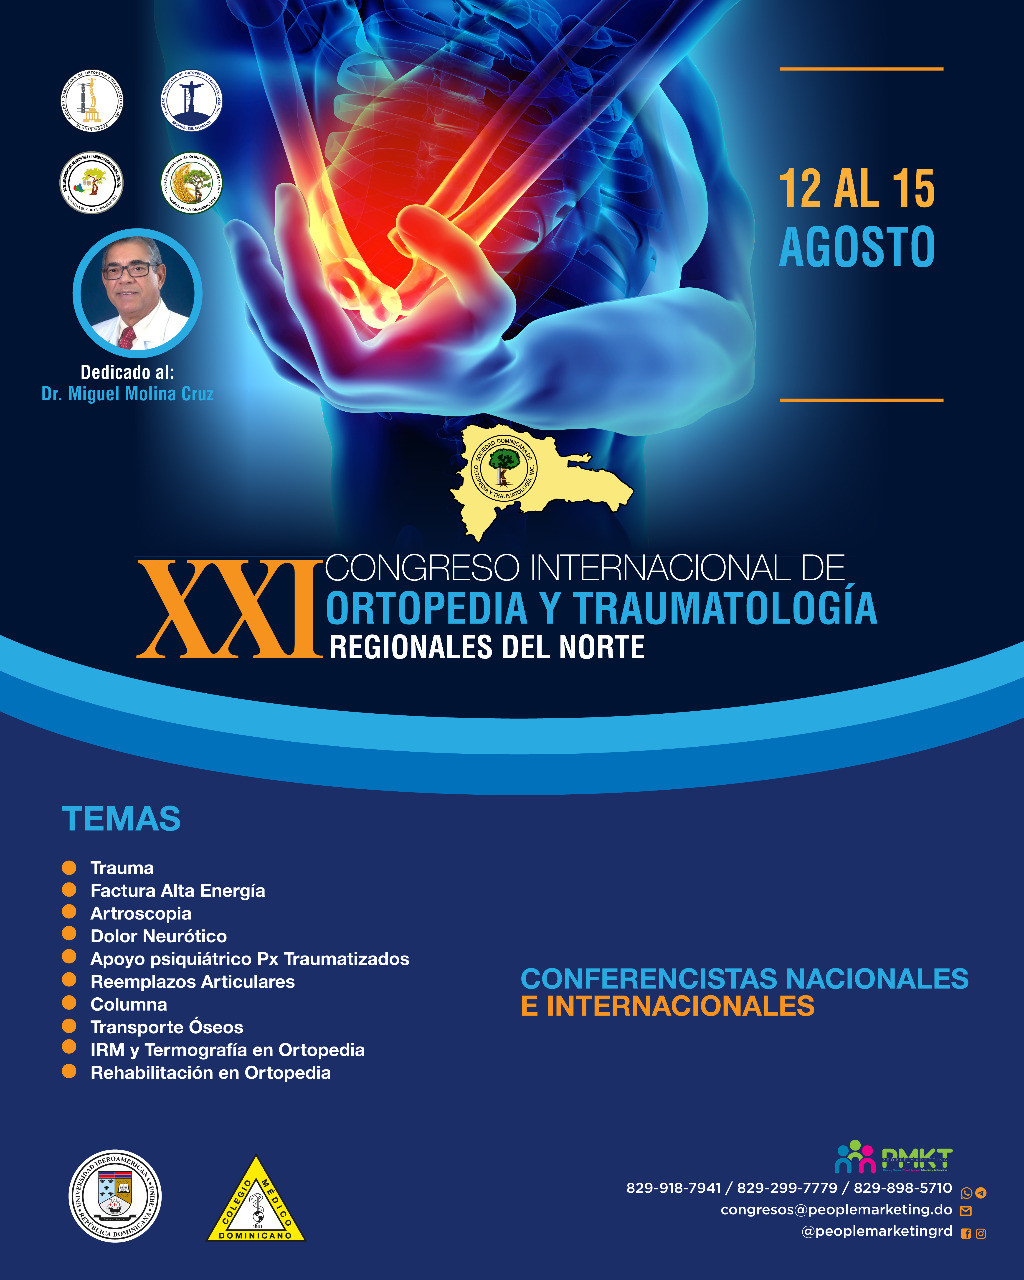 Sociedad dominicana de ortopedia, hace lanzamiento de su XXI congreso  internacional de ortopedia y traumatologia de las regionales del norte 2021